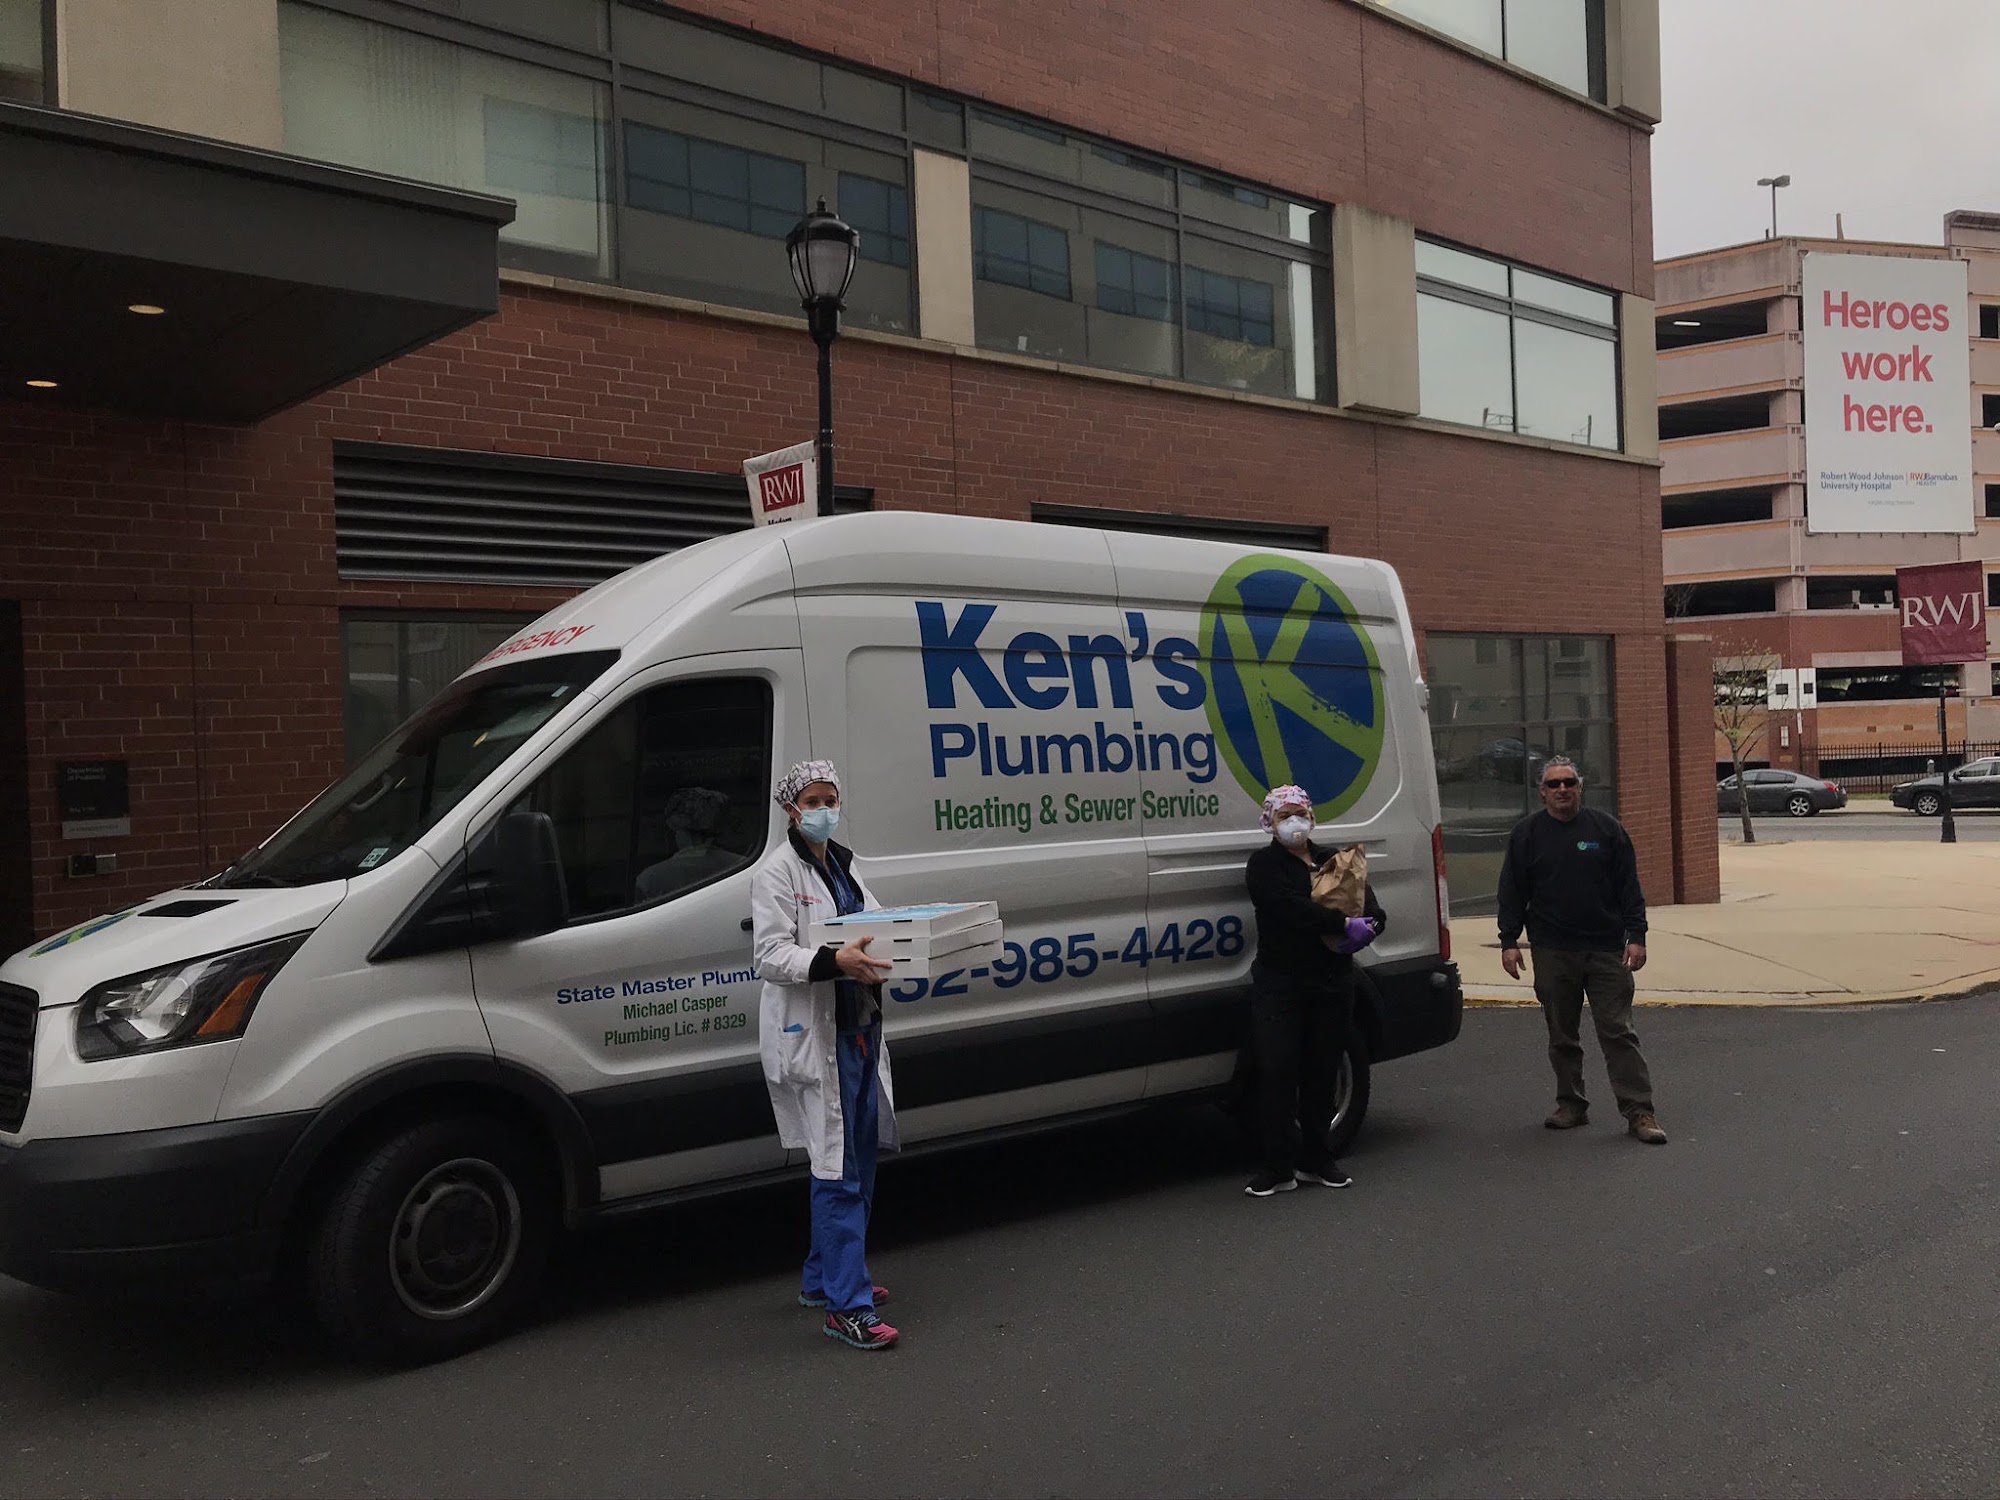 Ken's Plumbing, Aaron Sewer, Casper Heating